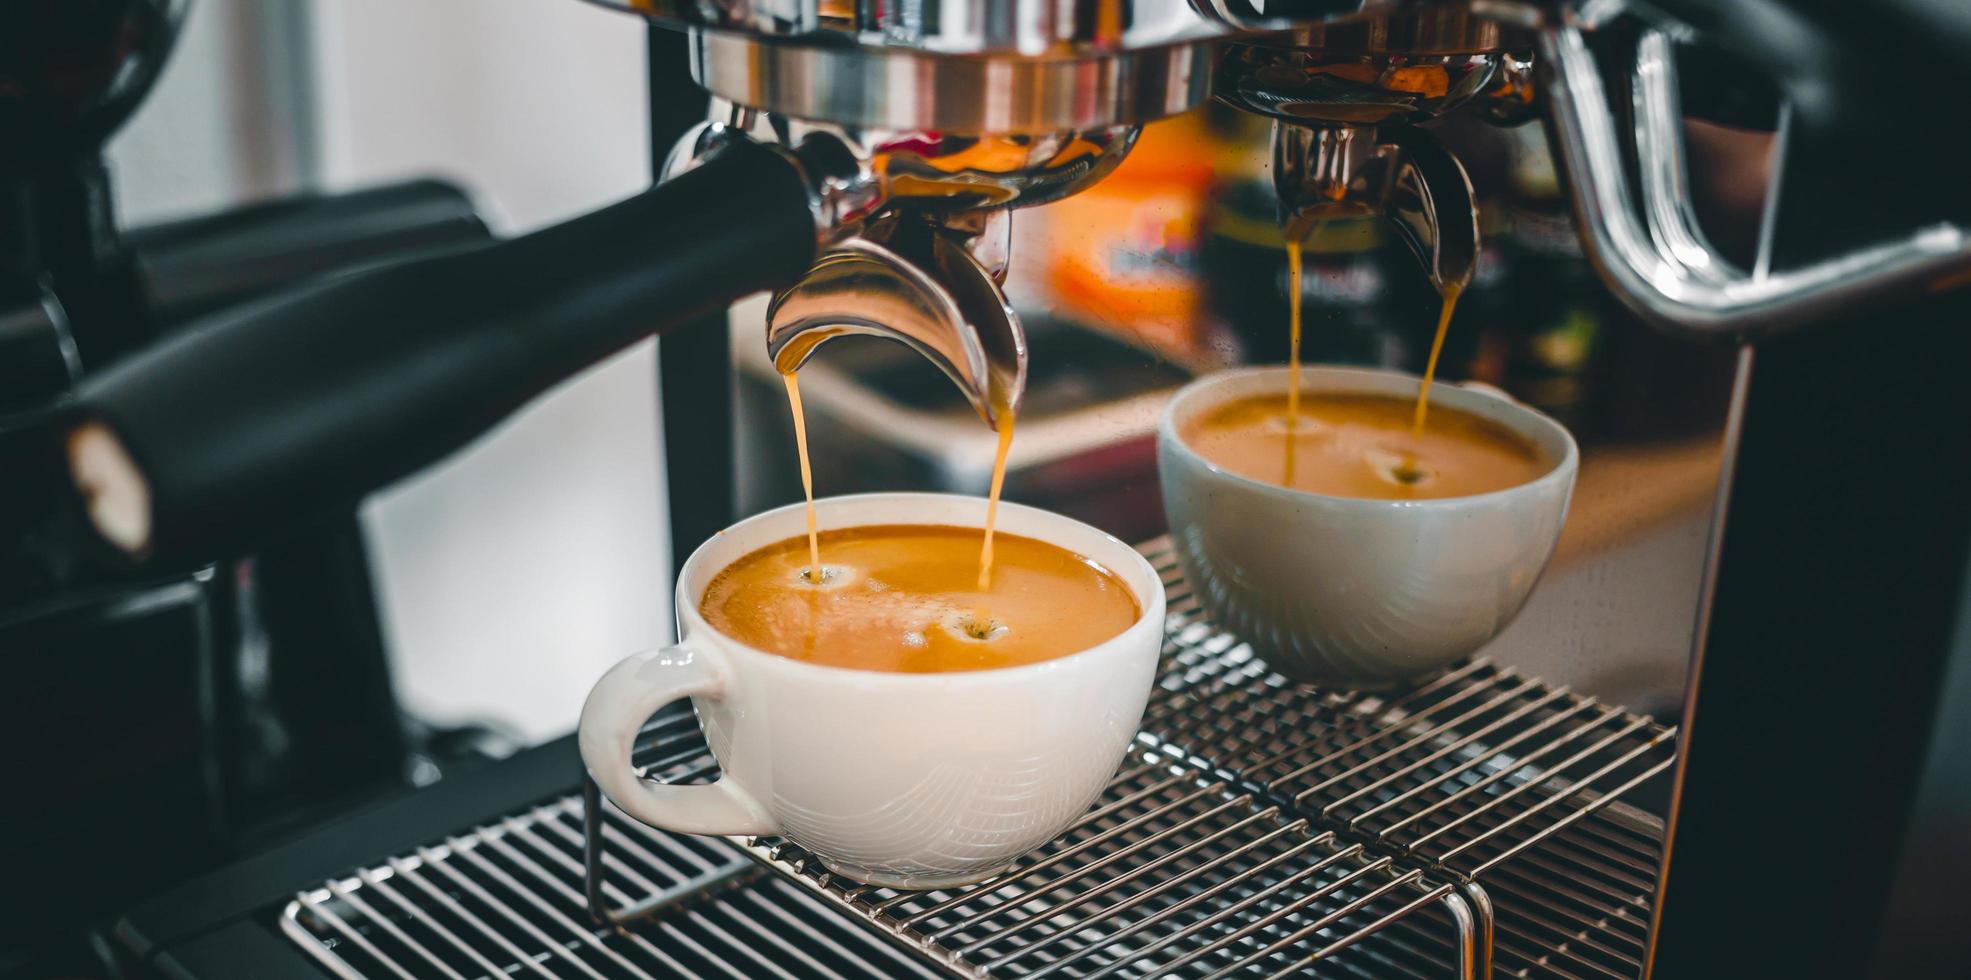 kaffe extraktion från de kaffe maskin med en portafilter häller kaffe in i en kopp, espresso porering från kaffe maskin på kaffe affär foto